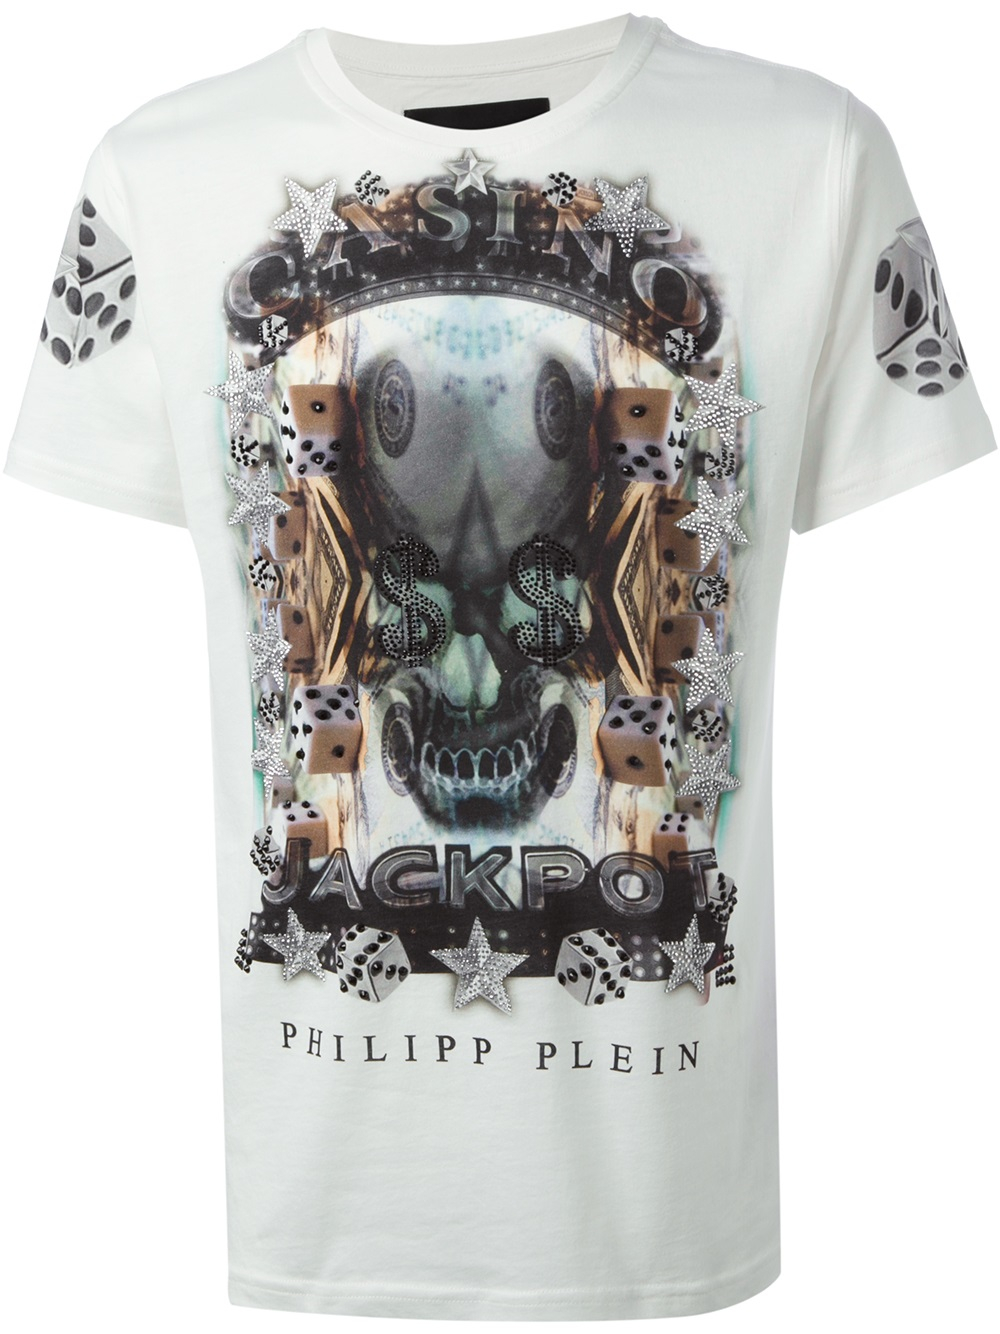 philipp plein casino t shirt